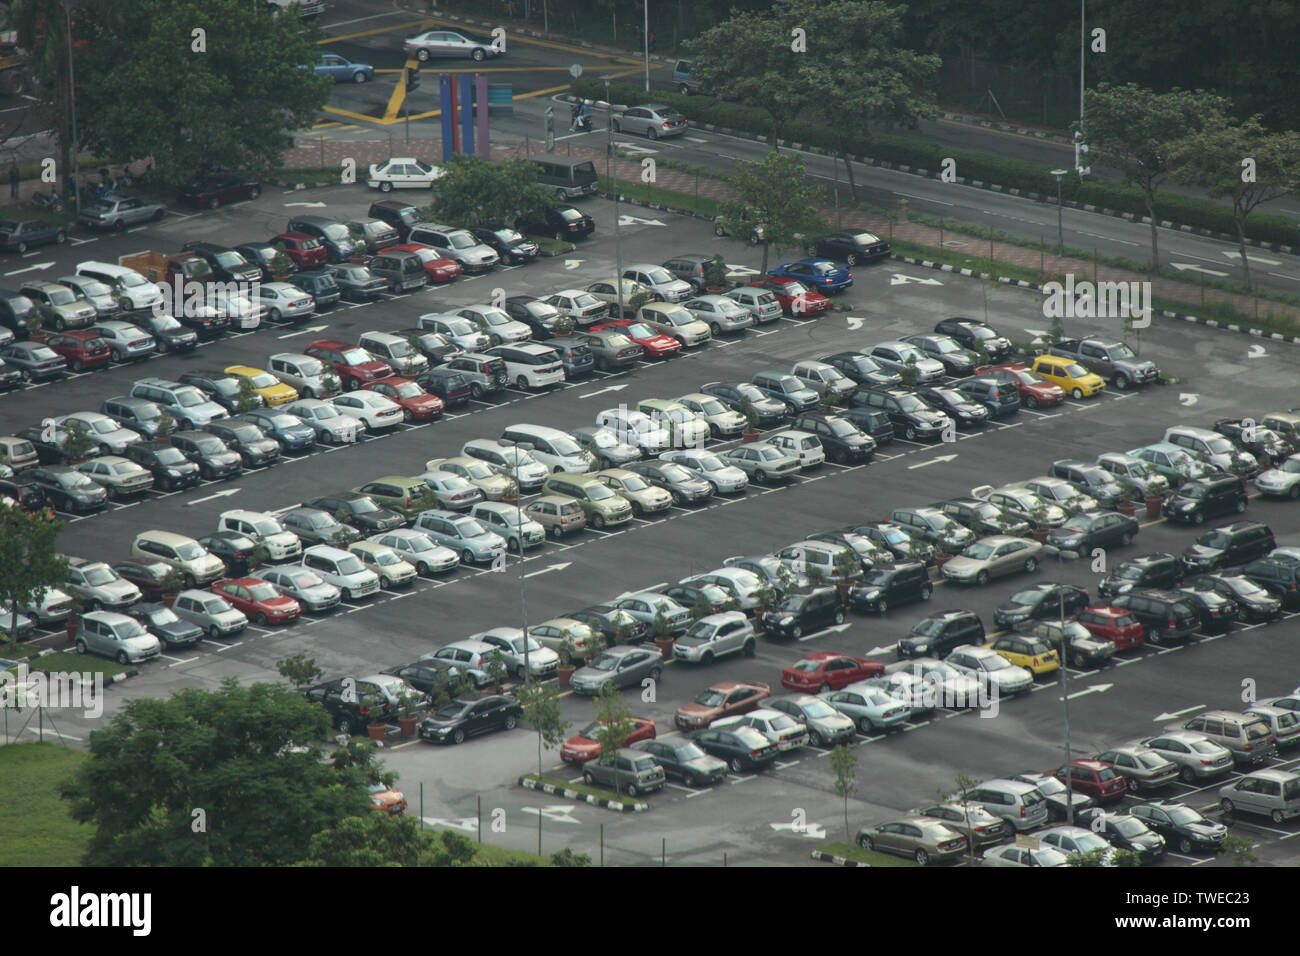 Portrait de voitures garées dans un parking Banque D'Images